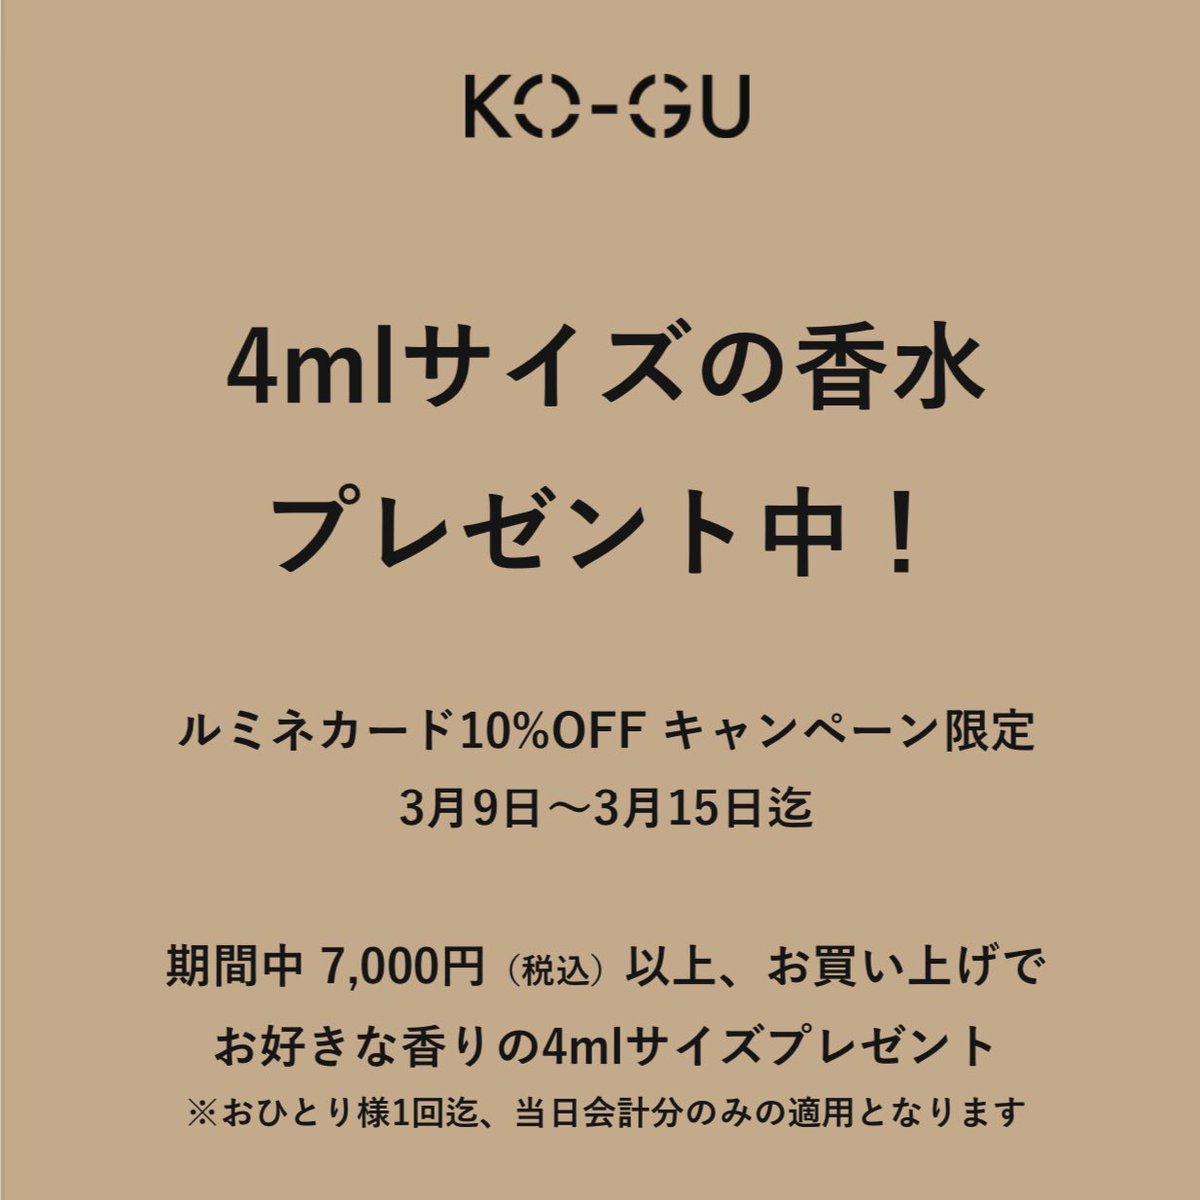 KO-GU (@ko_gu_com) / Twitter